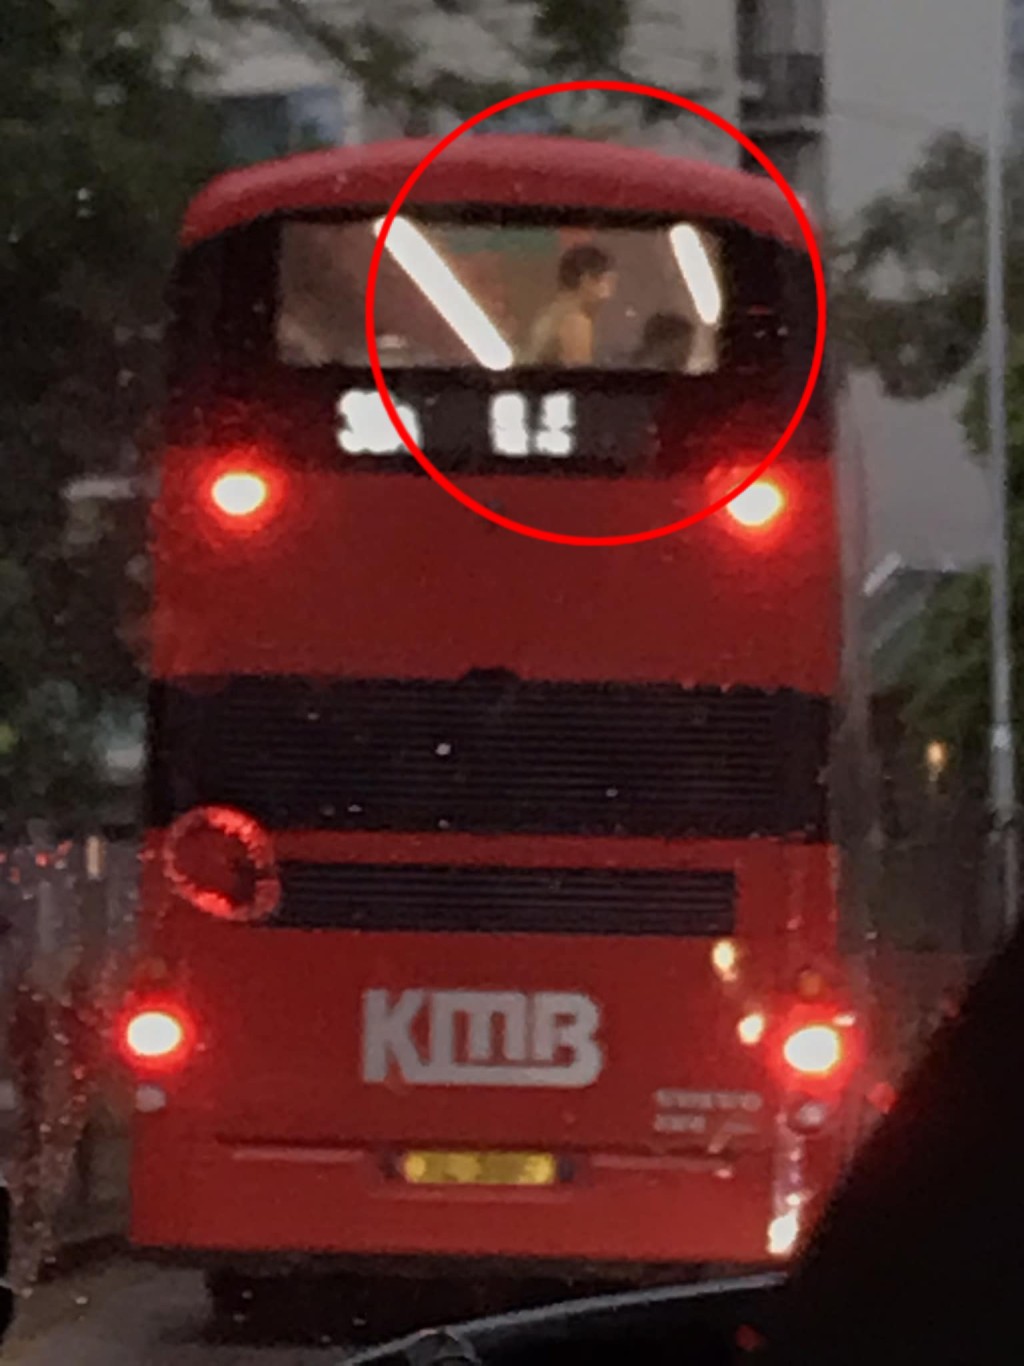 有网民在雨中拍到一张「惹人遐思」的相片，相中一对男女企在巴士上层车尾，似有让人想入非非的行为正在进行，疑幻疑真引发网民热议。